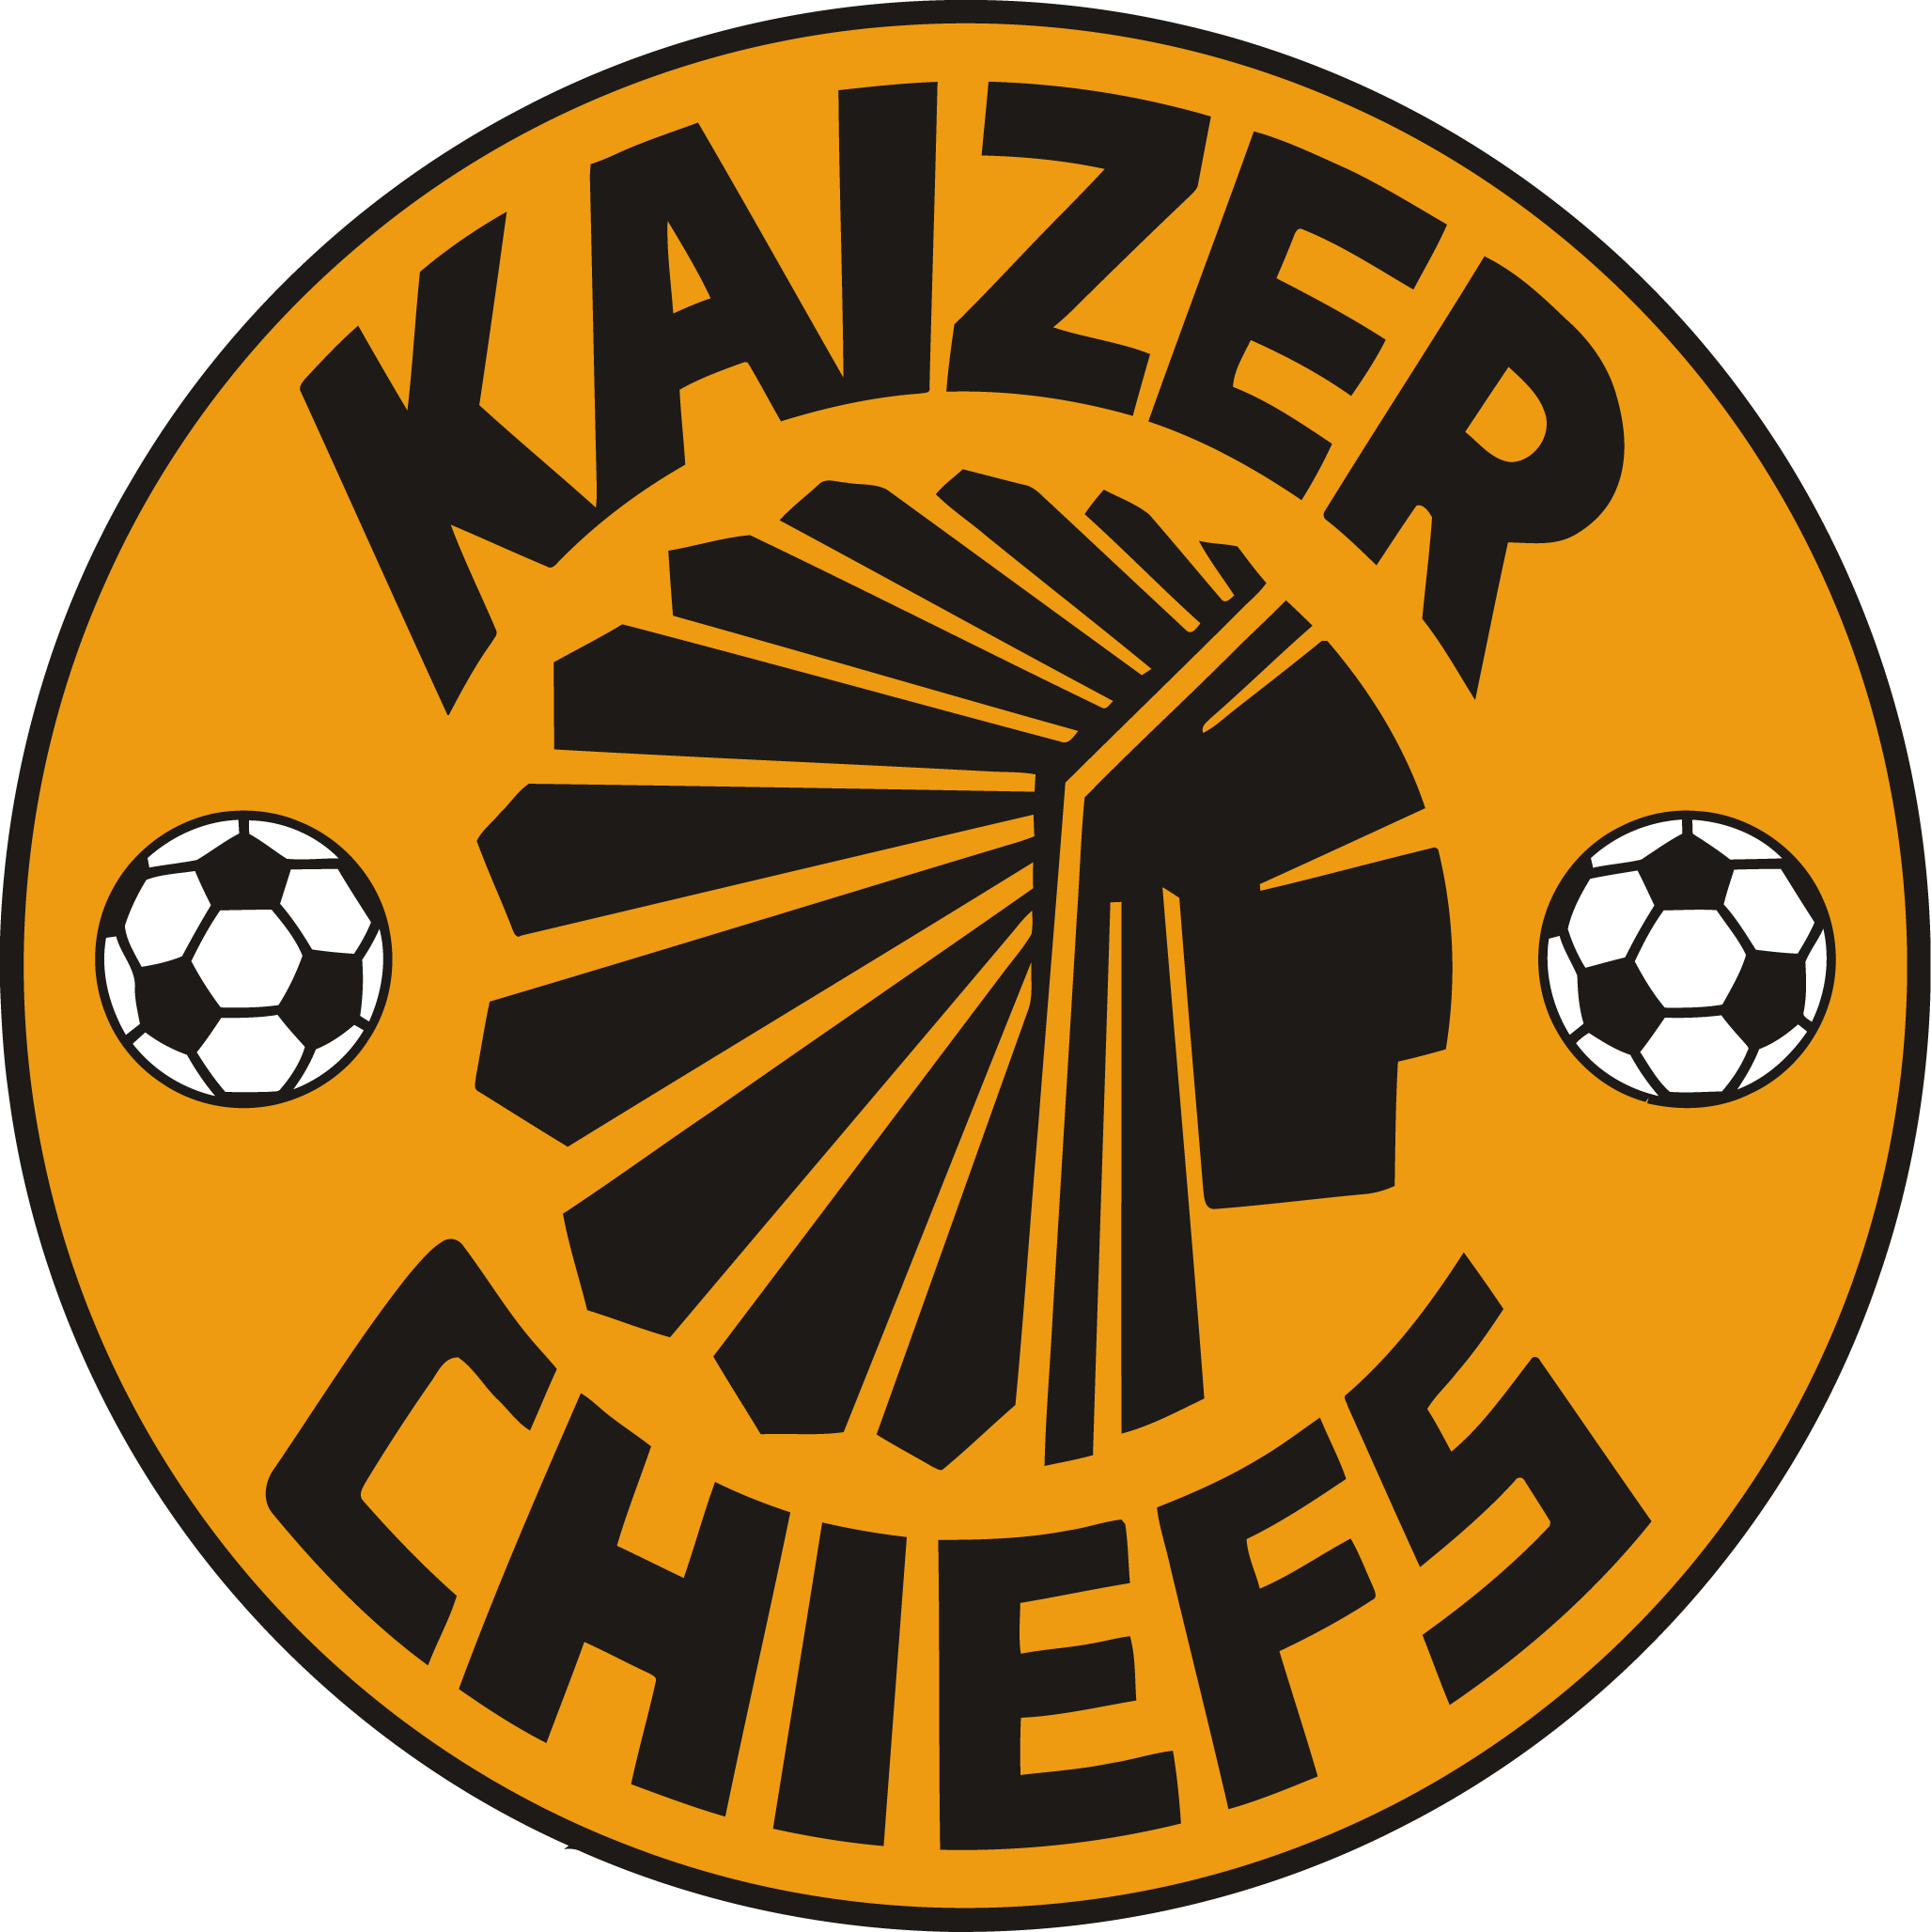 Kaiser Chiefs - Kaizer Chiefs Logo Png , HD Wallpaper & Backgrounds